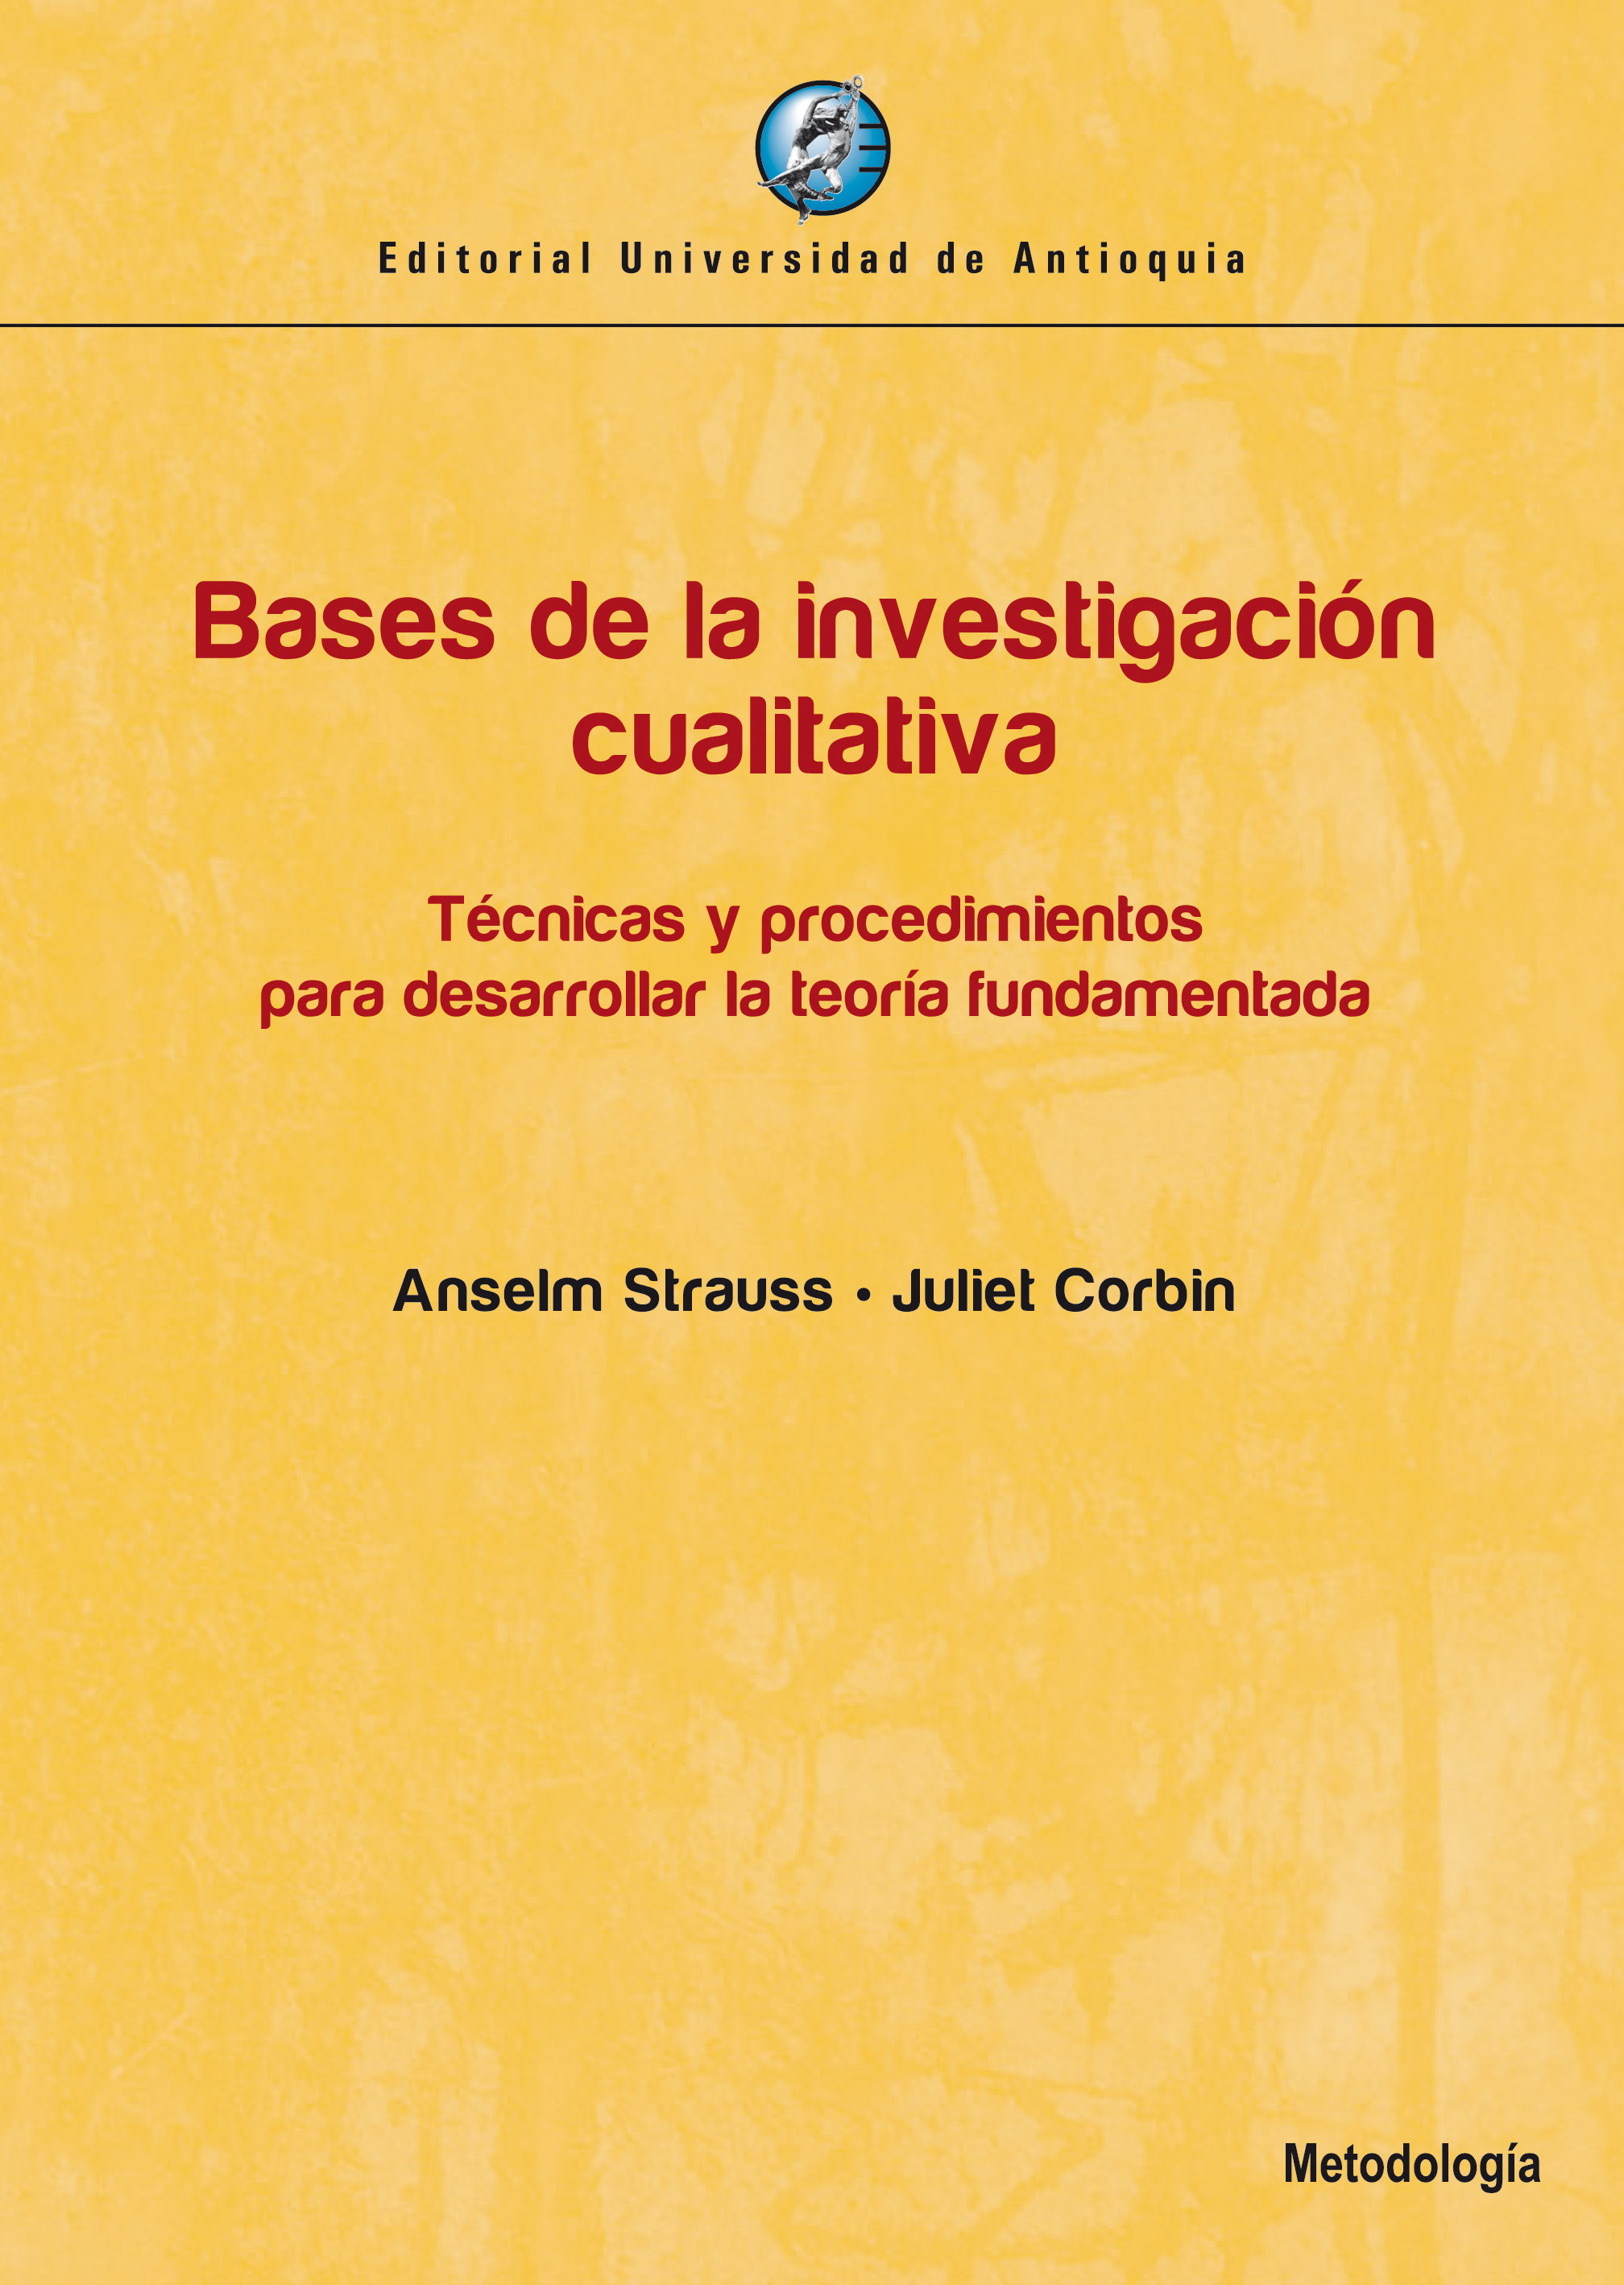 Resultado de imagen para Bases de la investigaciÃ³n cualitativa. Anselm Strauss y Juliet Corbin